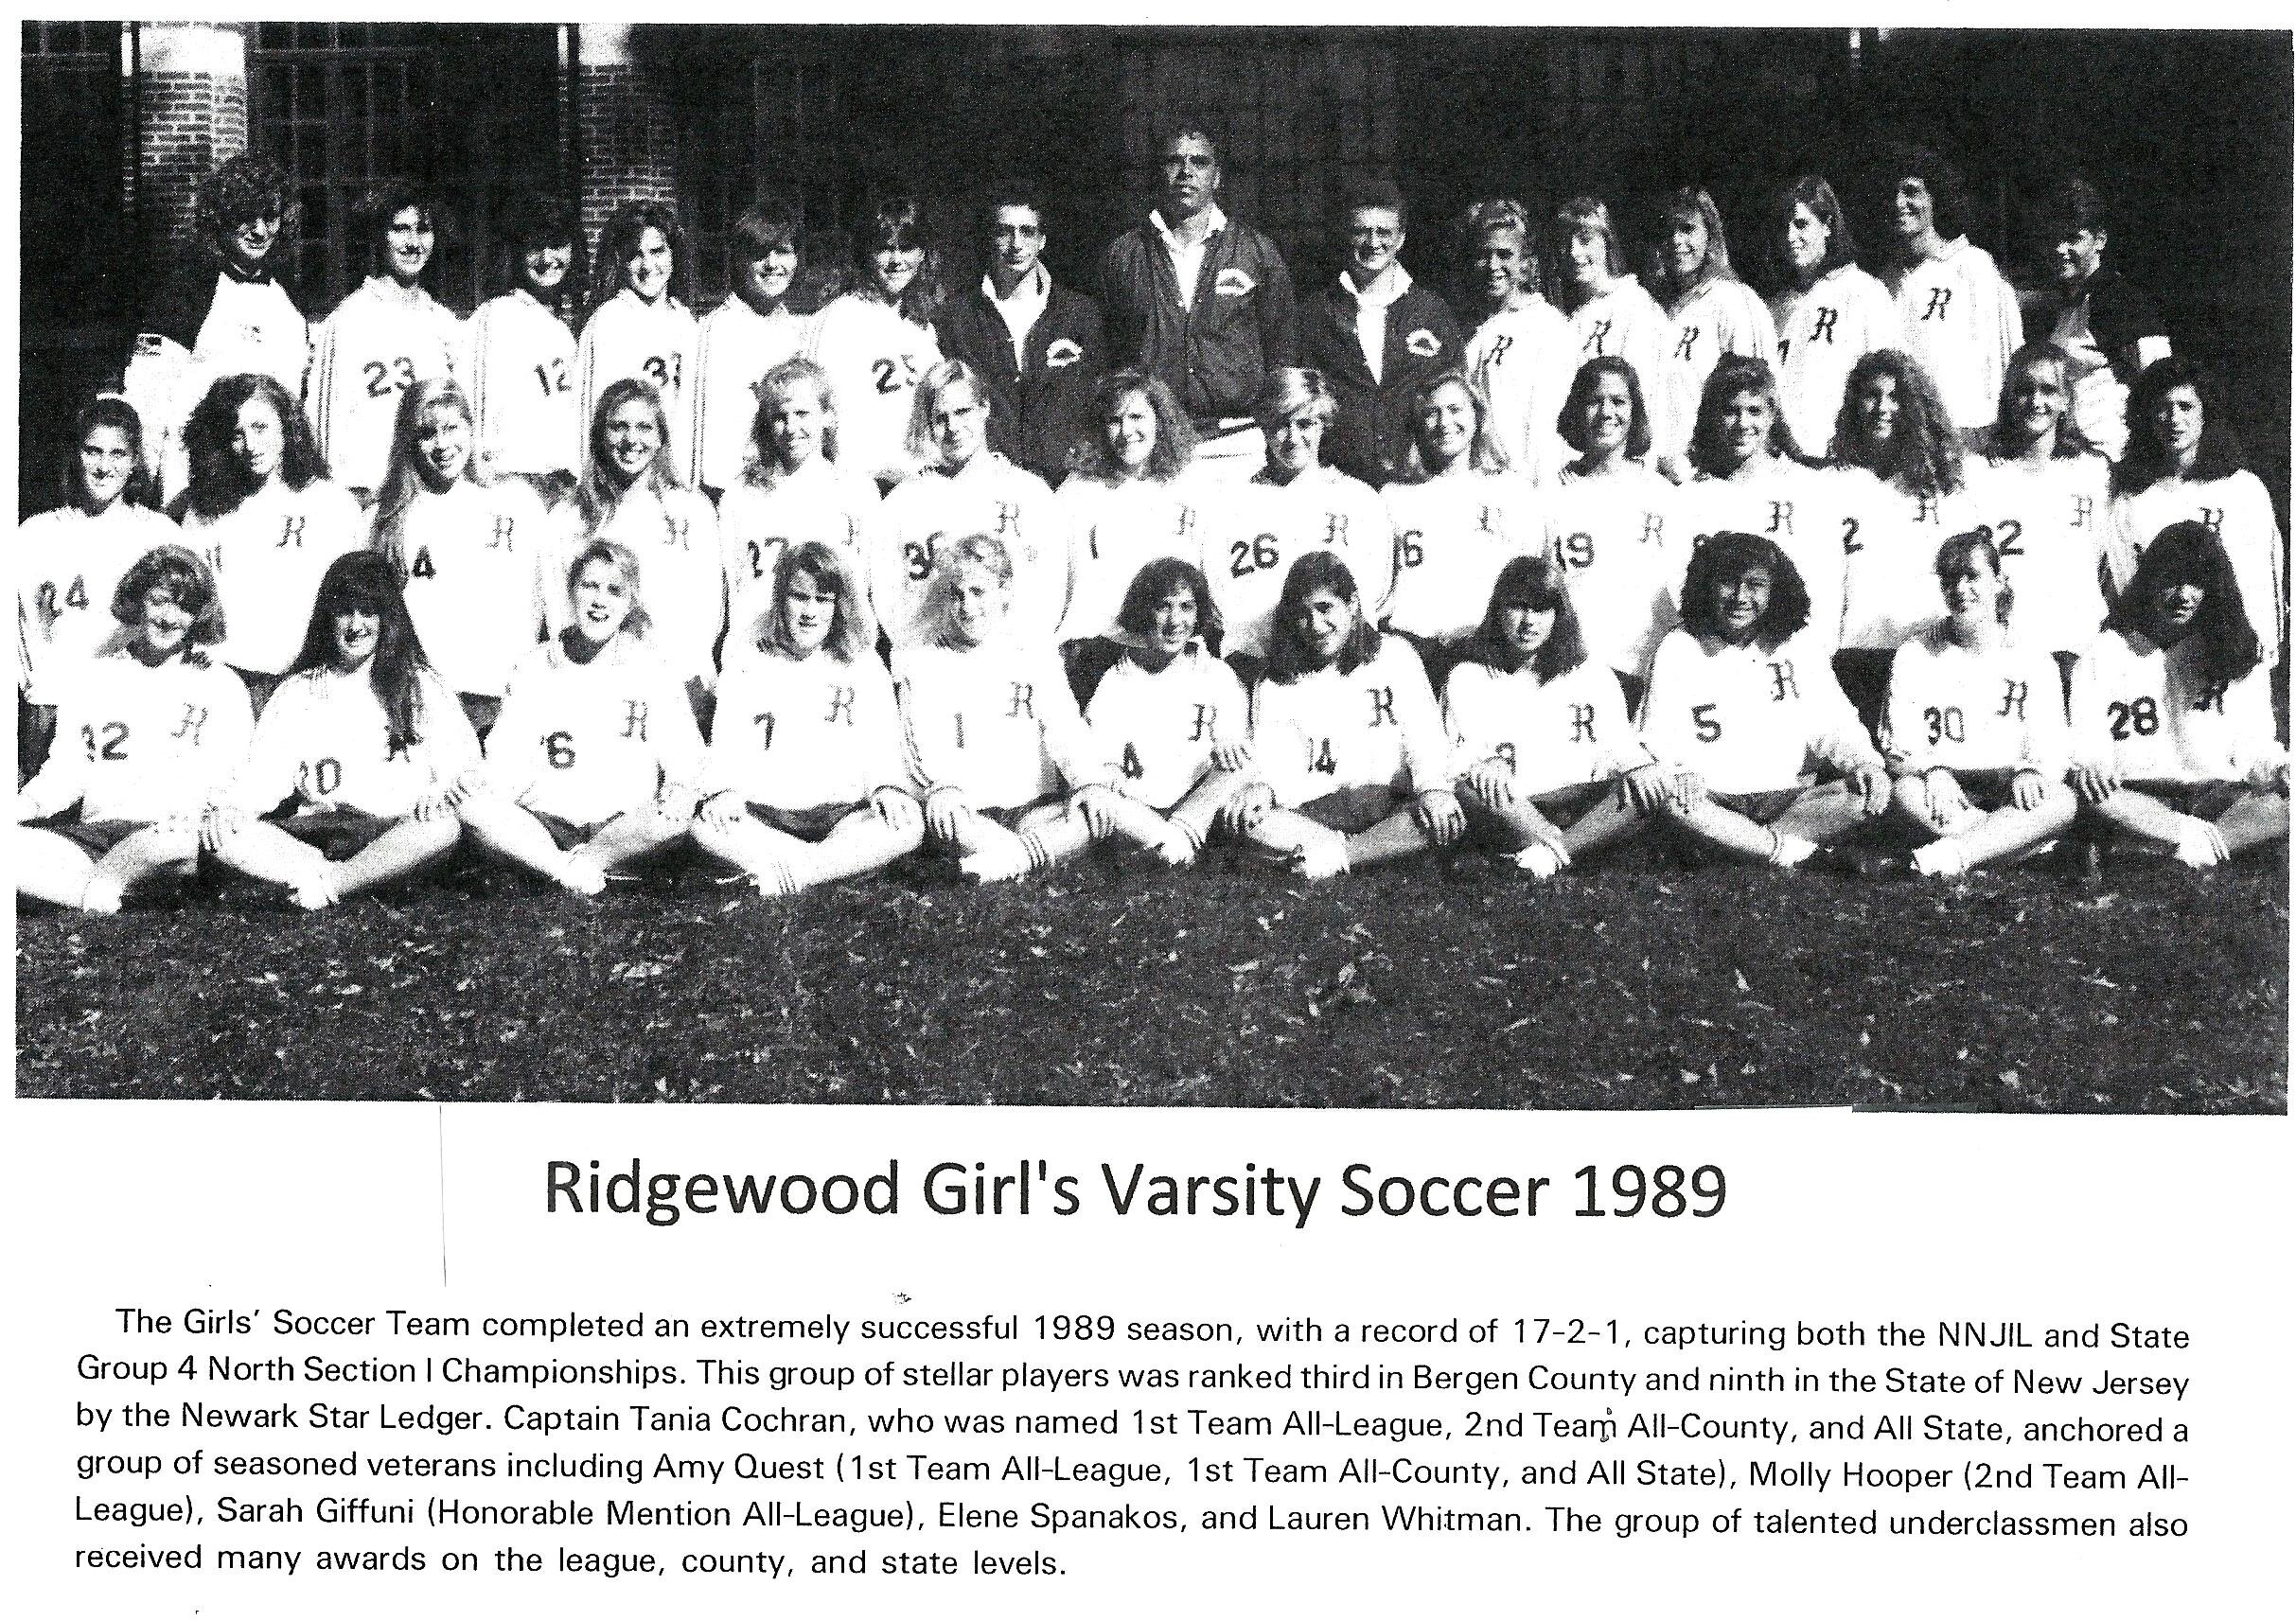 1989 Girls’ Soccer Team